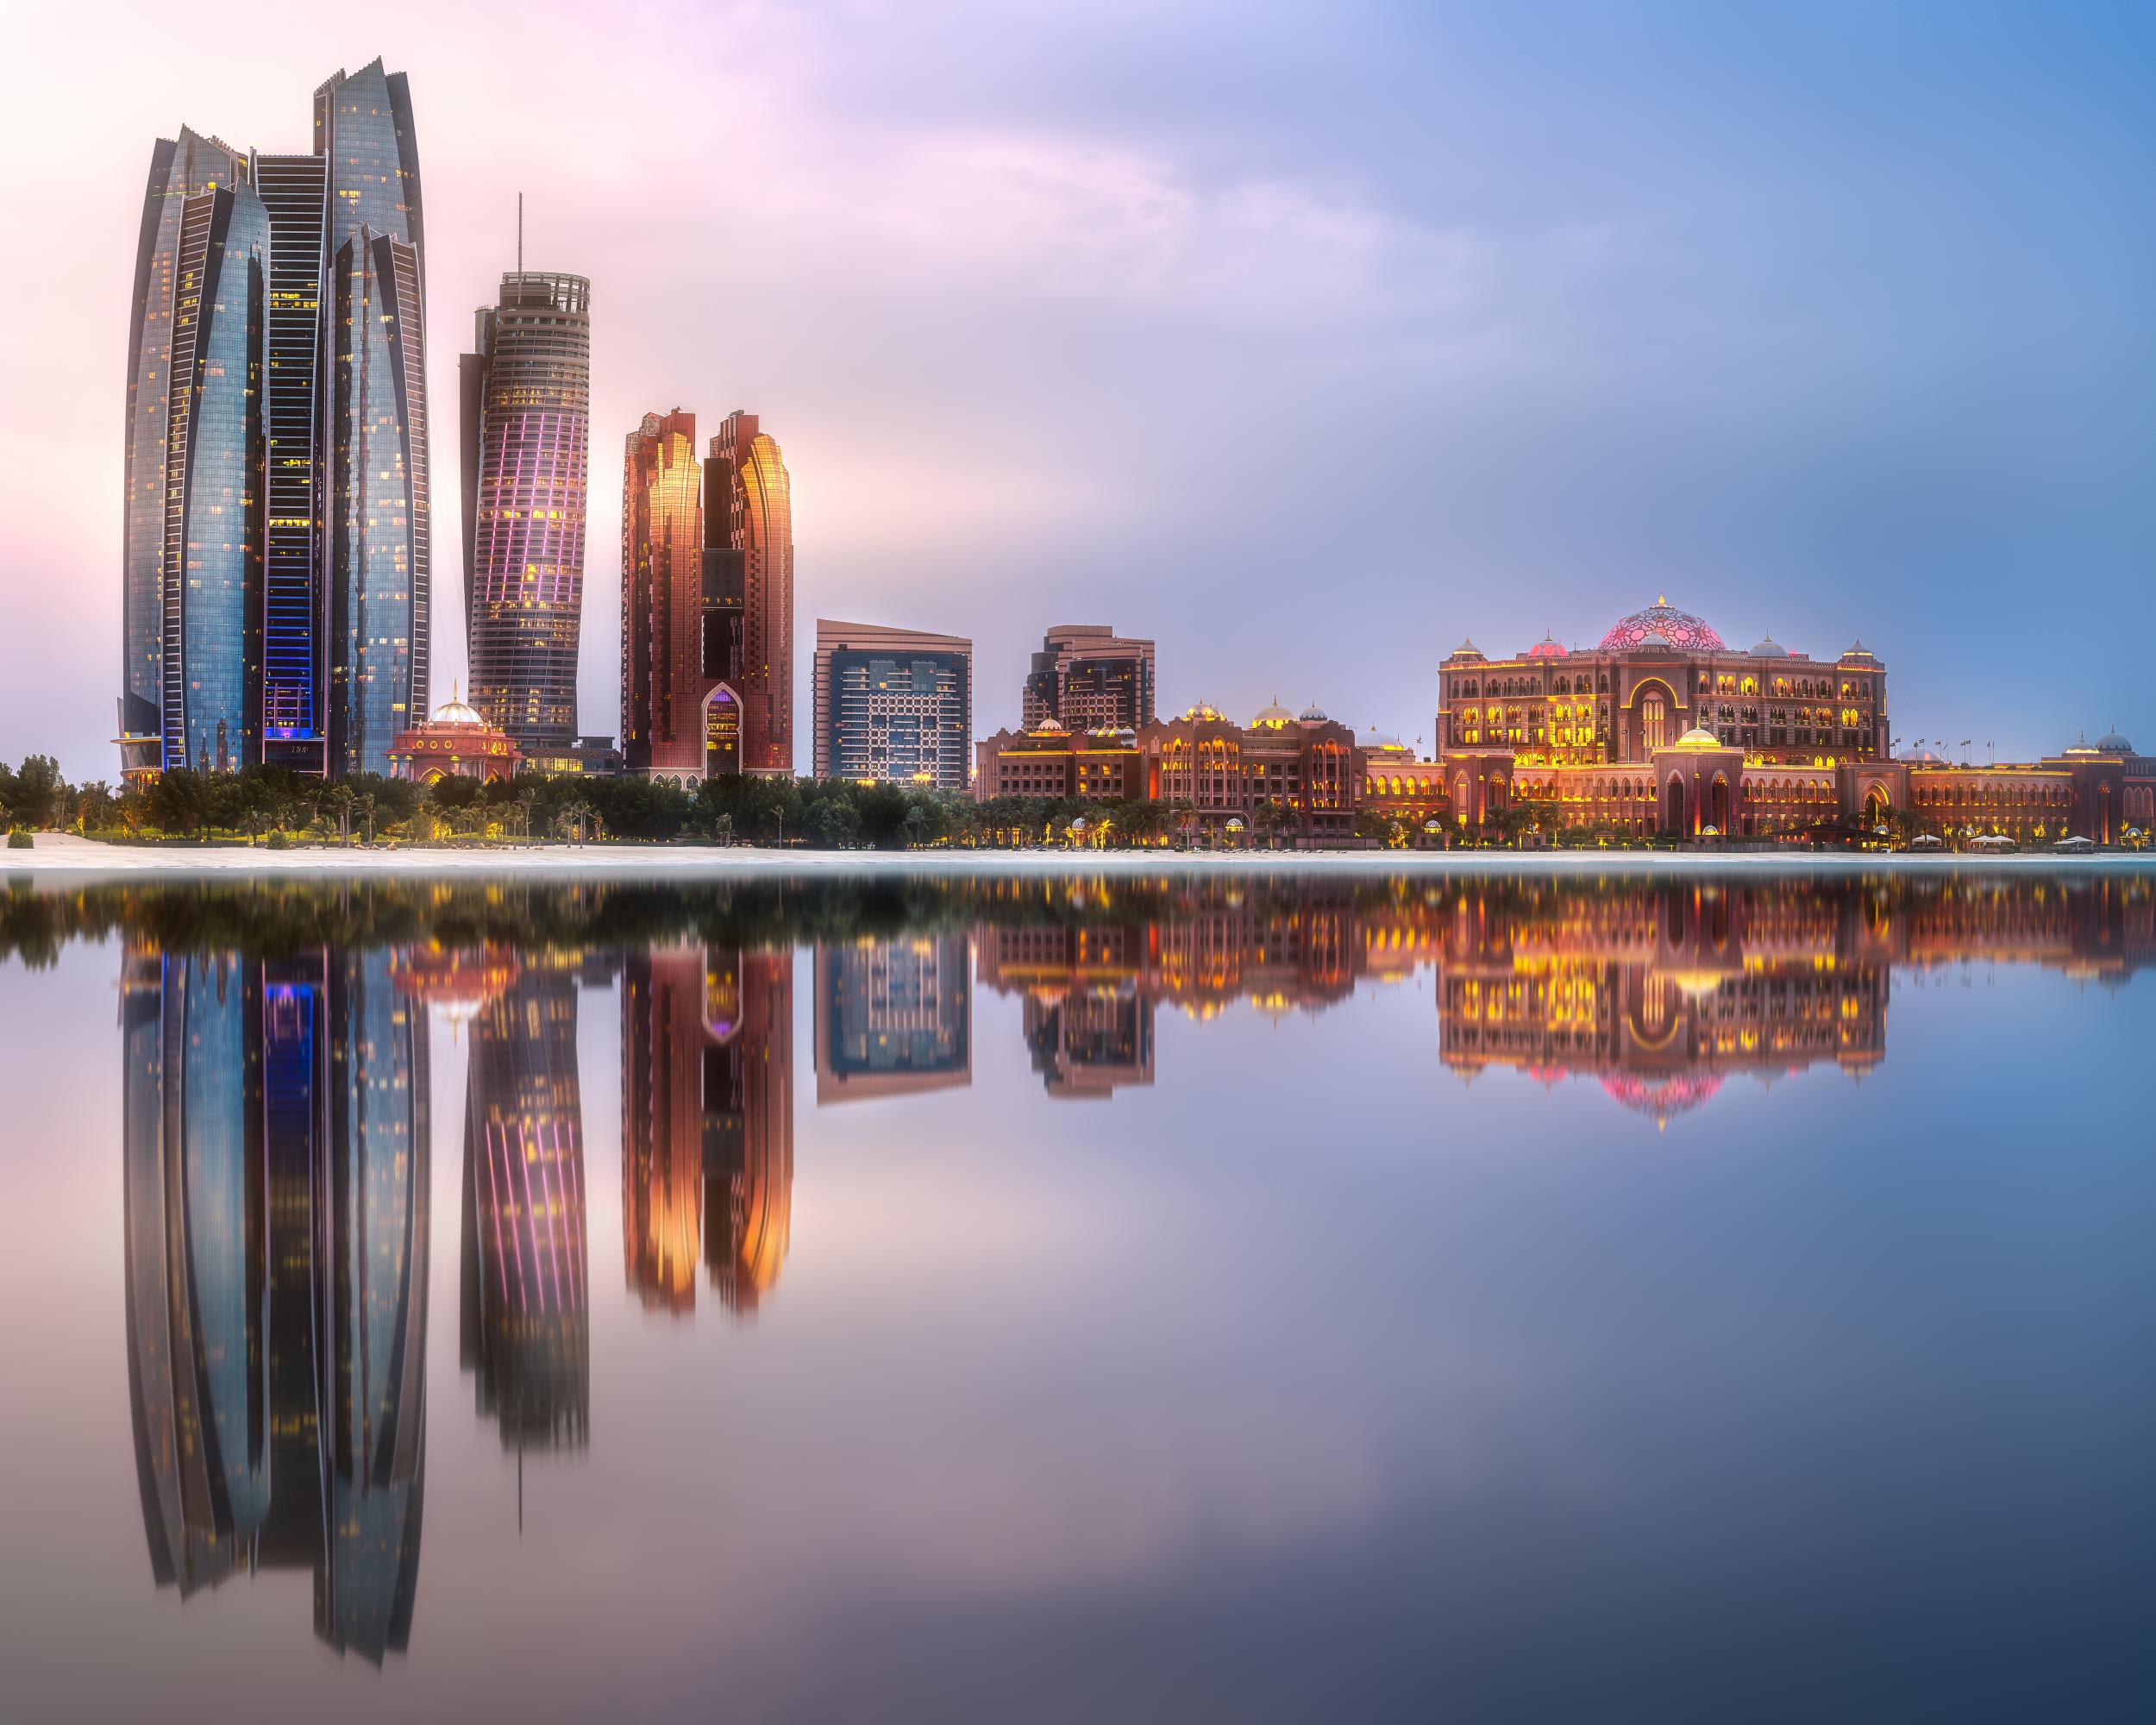 The Abu Dhabi skyline at sunrise